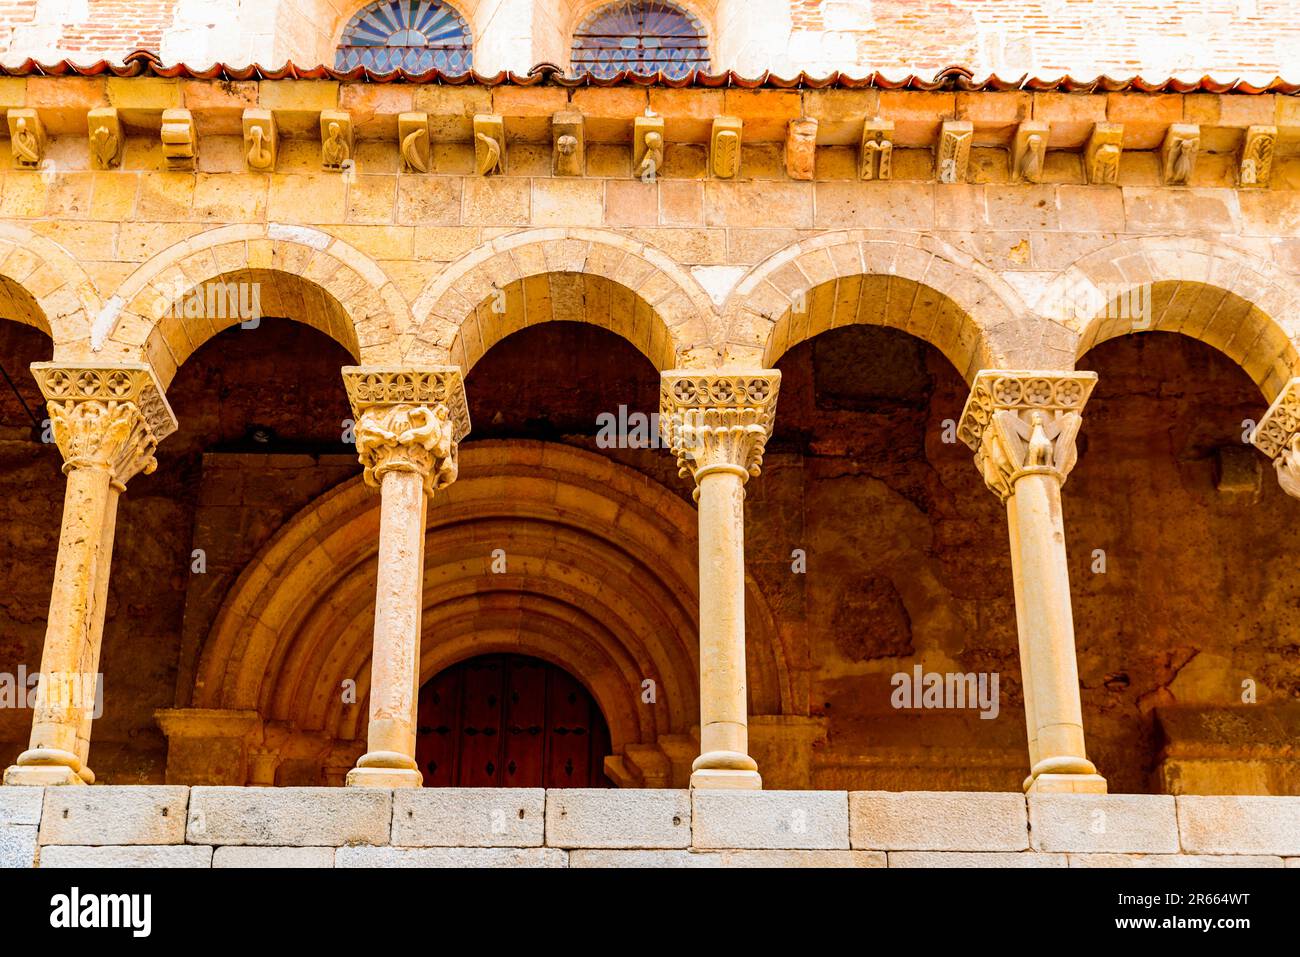 Détail des colonnes de l'atrium. L'église de San Martín est un temple catholique situé dans les murs de la ville espagnole de Segovia, un exemple Banque D'Images